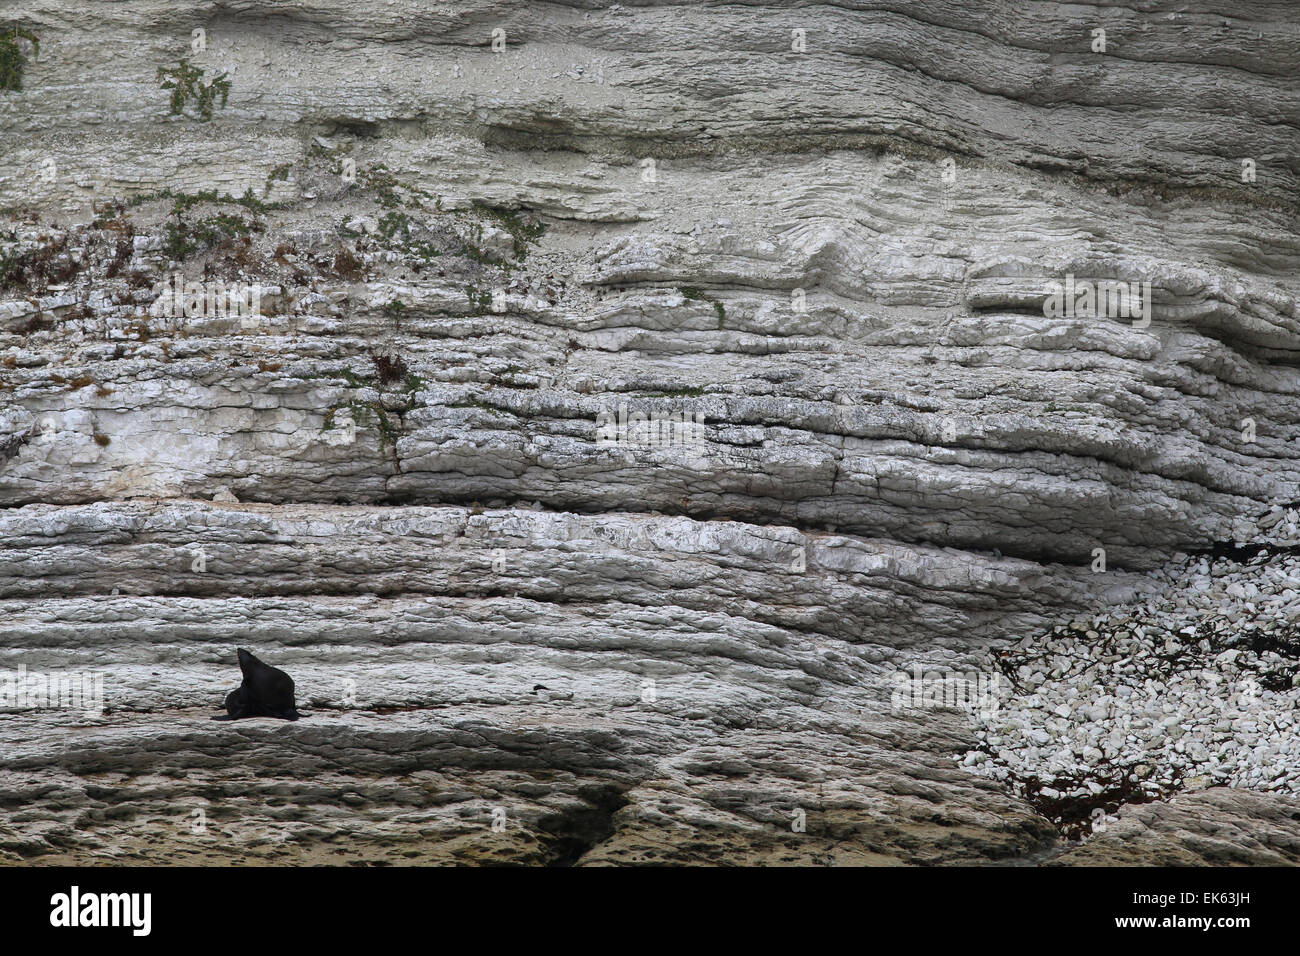 Nueva Zelandia foca en capas de roca caliza y pozas de marea de la península de Kaikoura, Isla del Sur, Nueva Zelanda Foto de stock